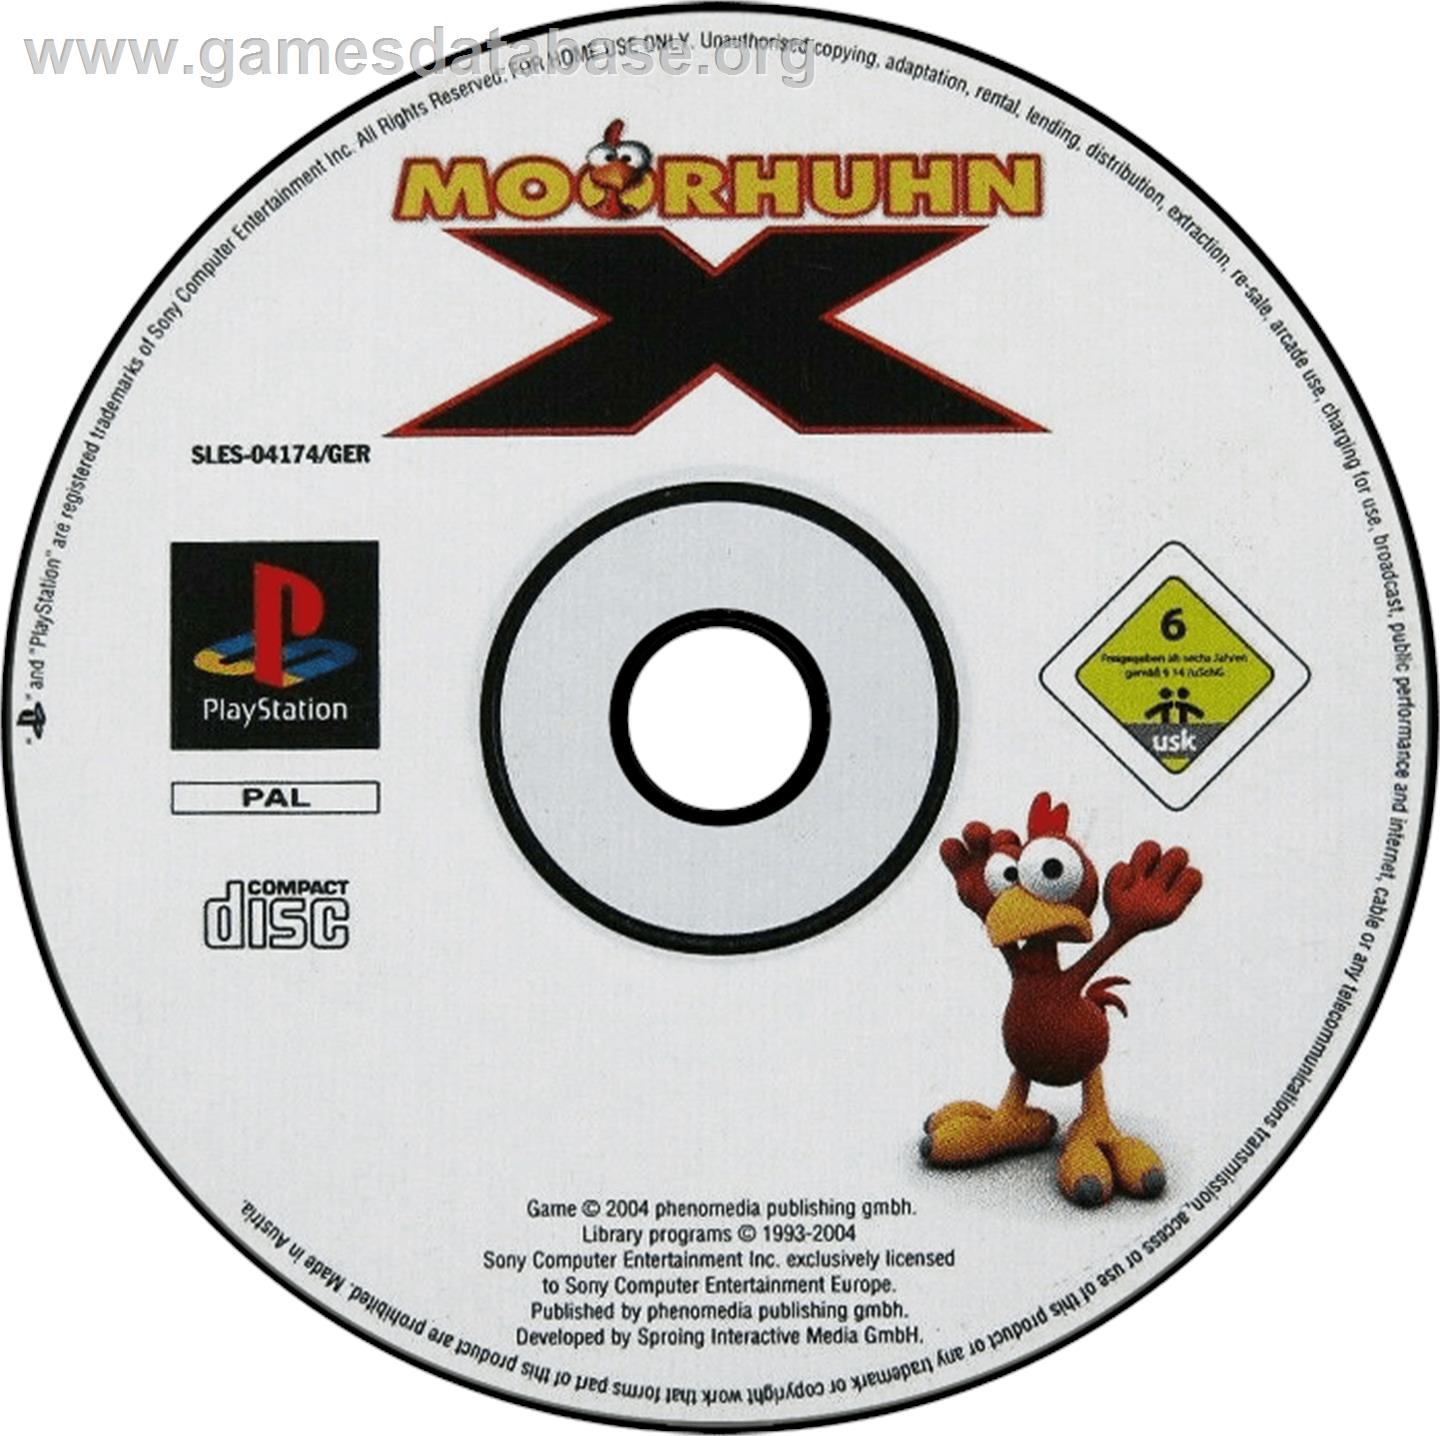 Moorhuhn X - Sony Playstation - Artwork - Disc